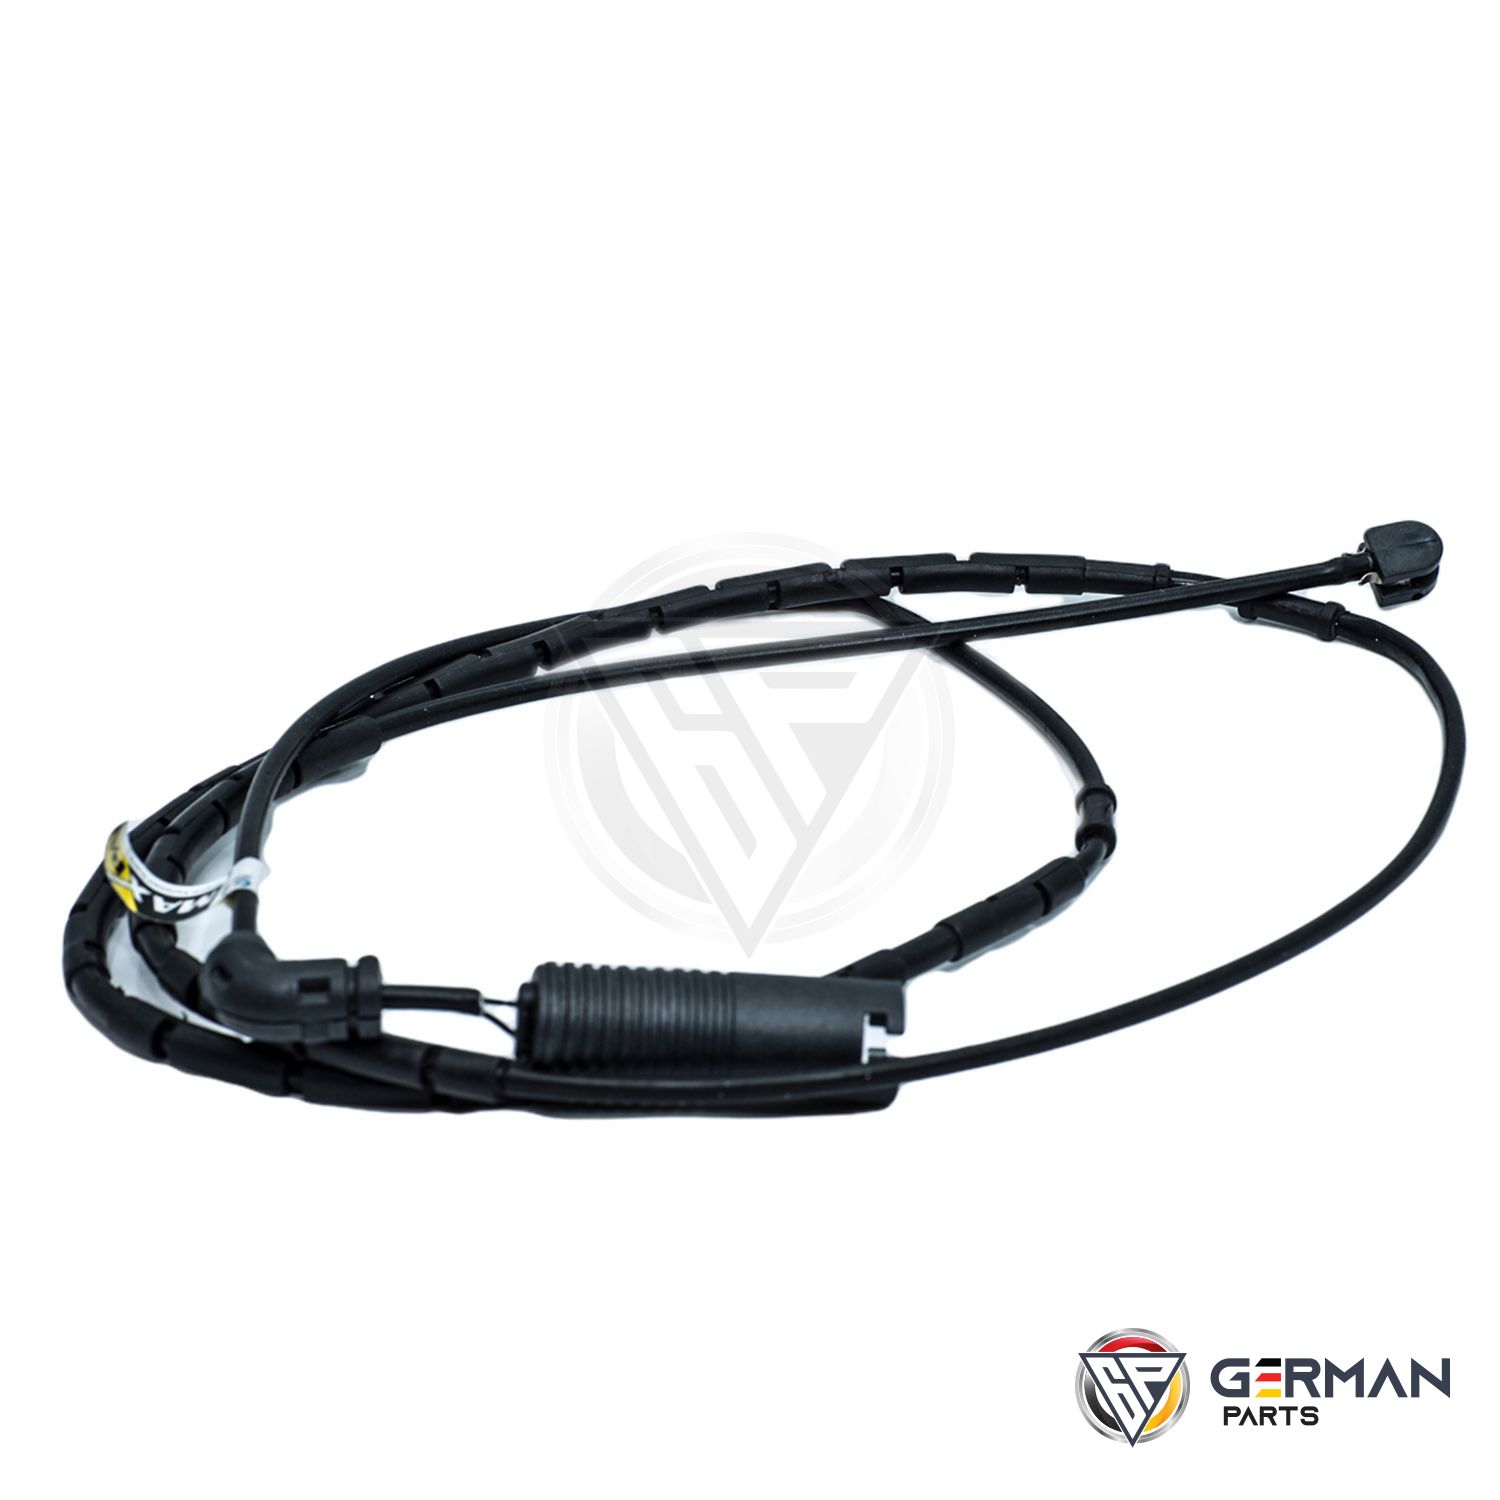 Buy Maxpart Brake Sensor 34351164372 - German Parts